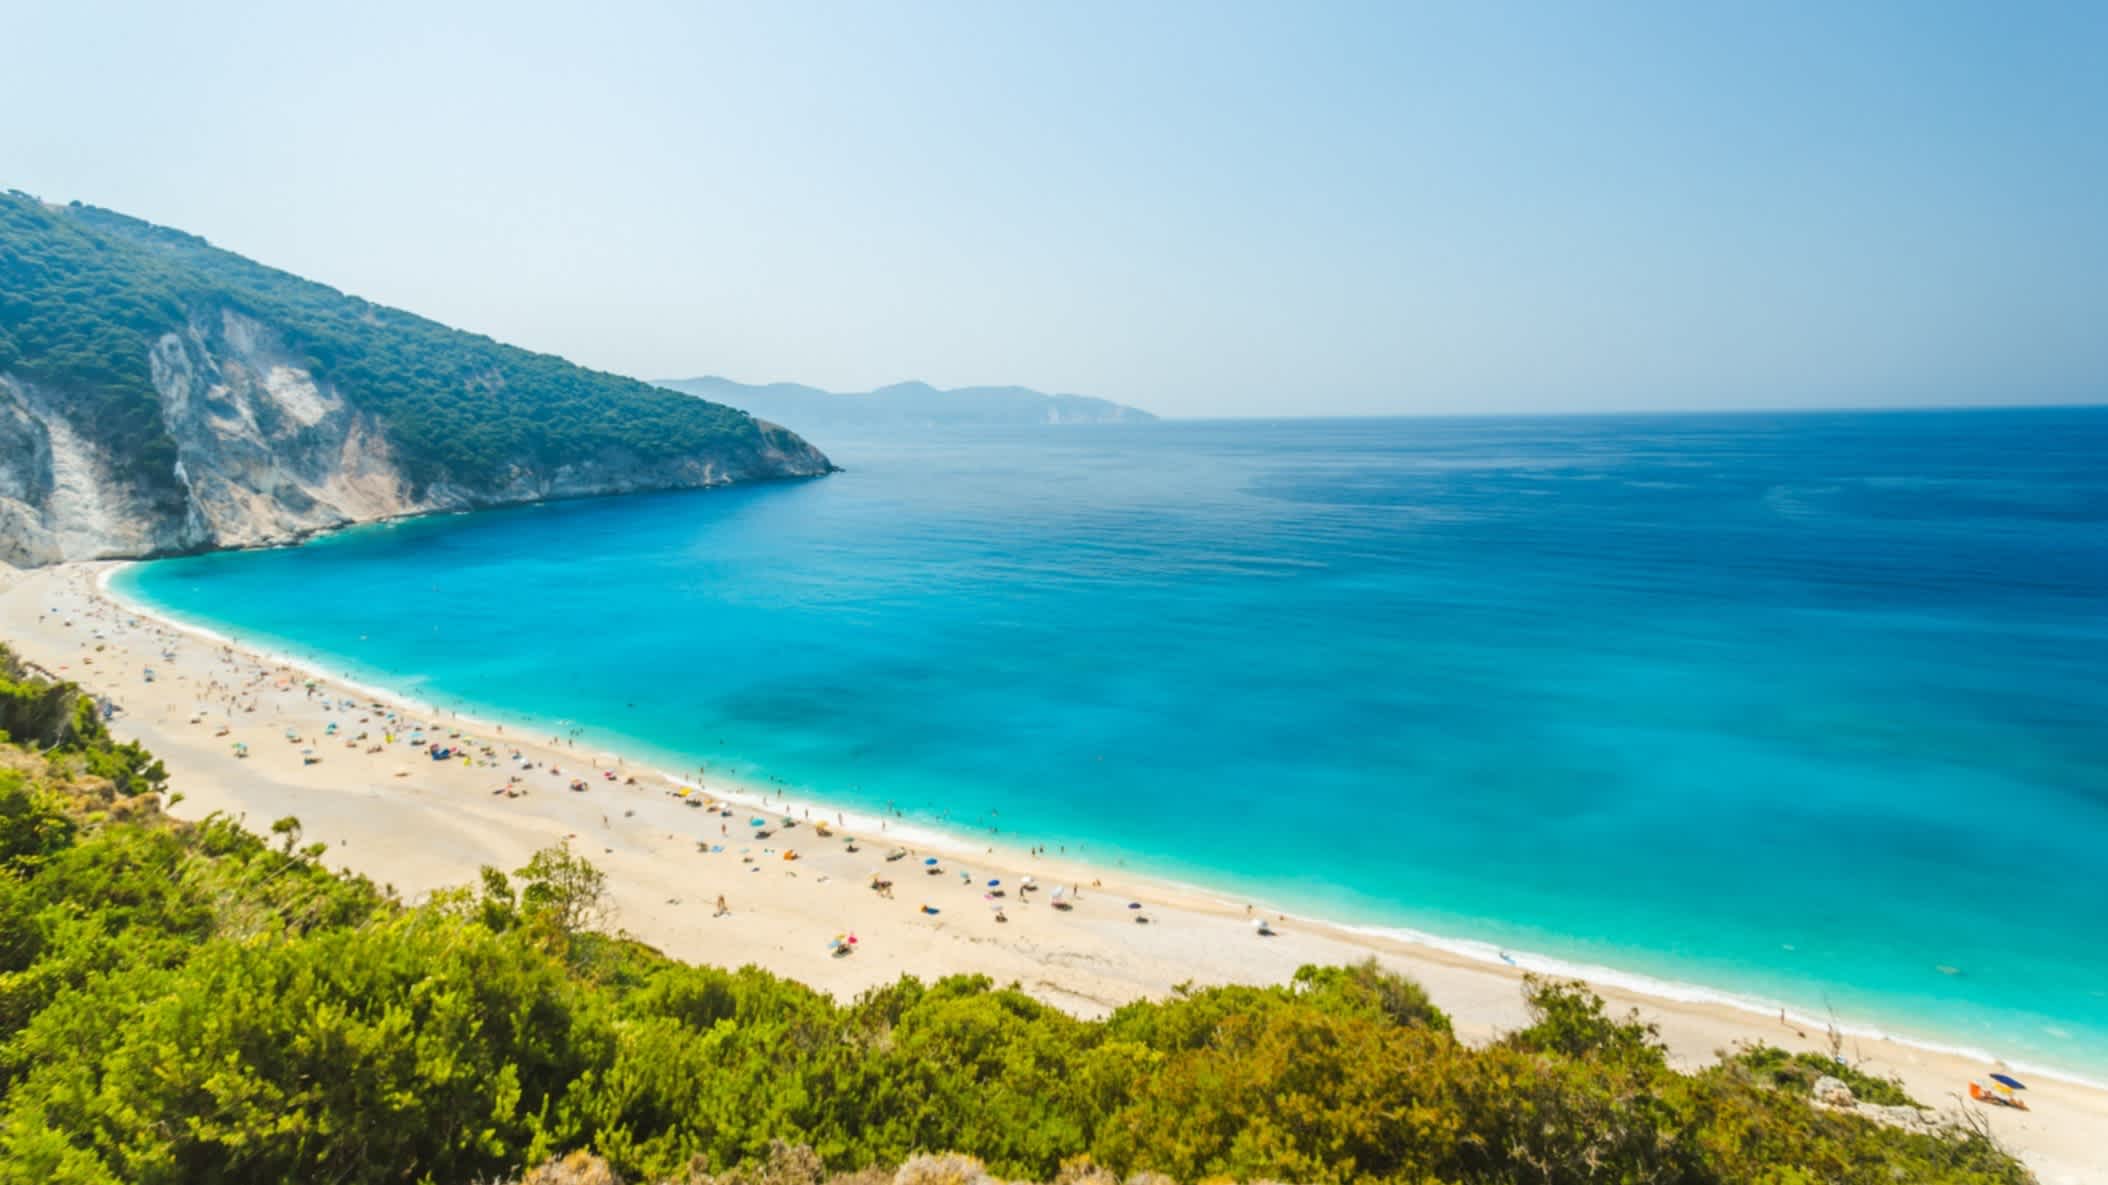 Schöner und berühmter Strand von Myrtos, Kefalonia, Griechenland mit dem weiten Meer, sowie dem Sandstrand und Bergen im Hintergrund.